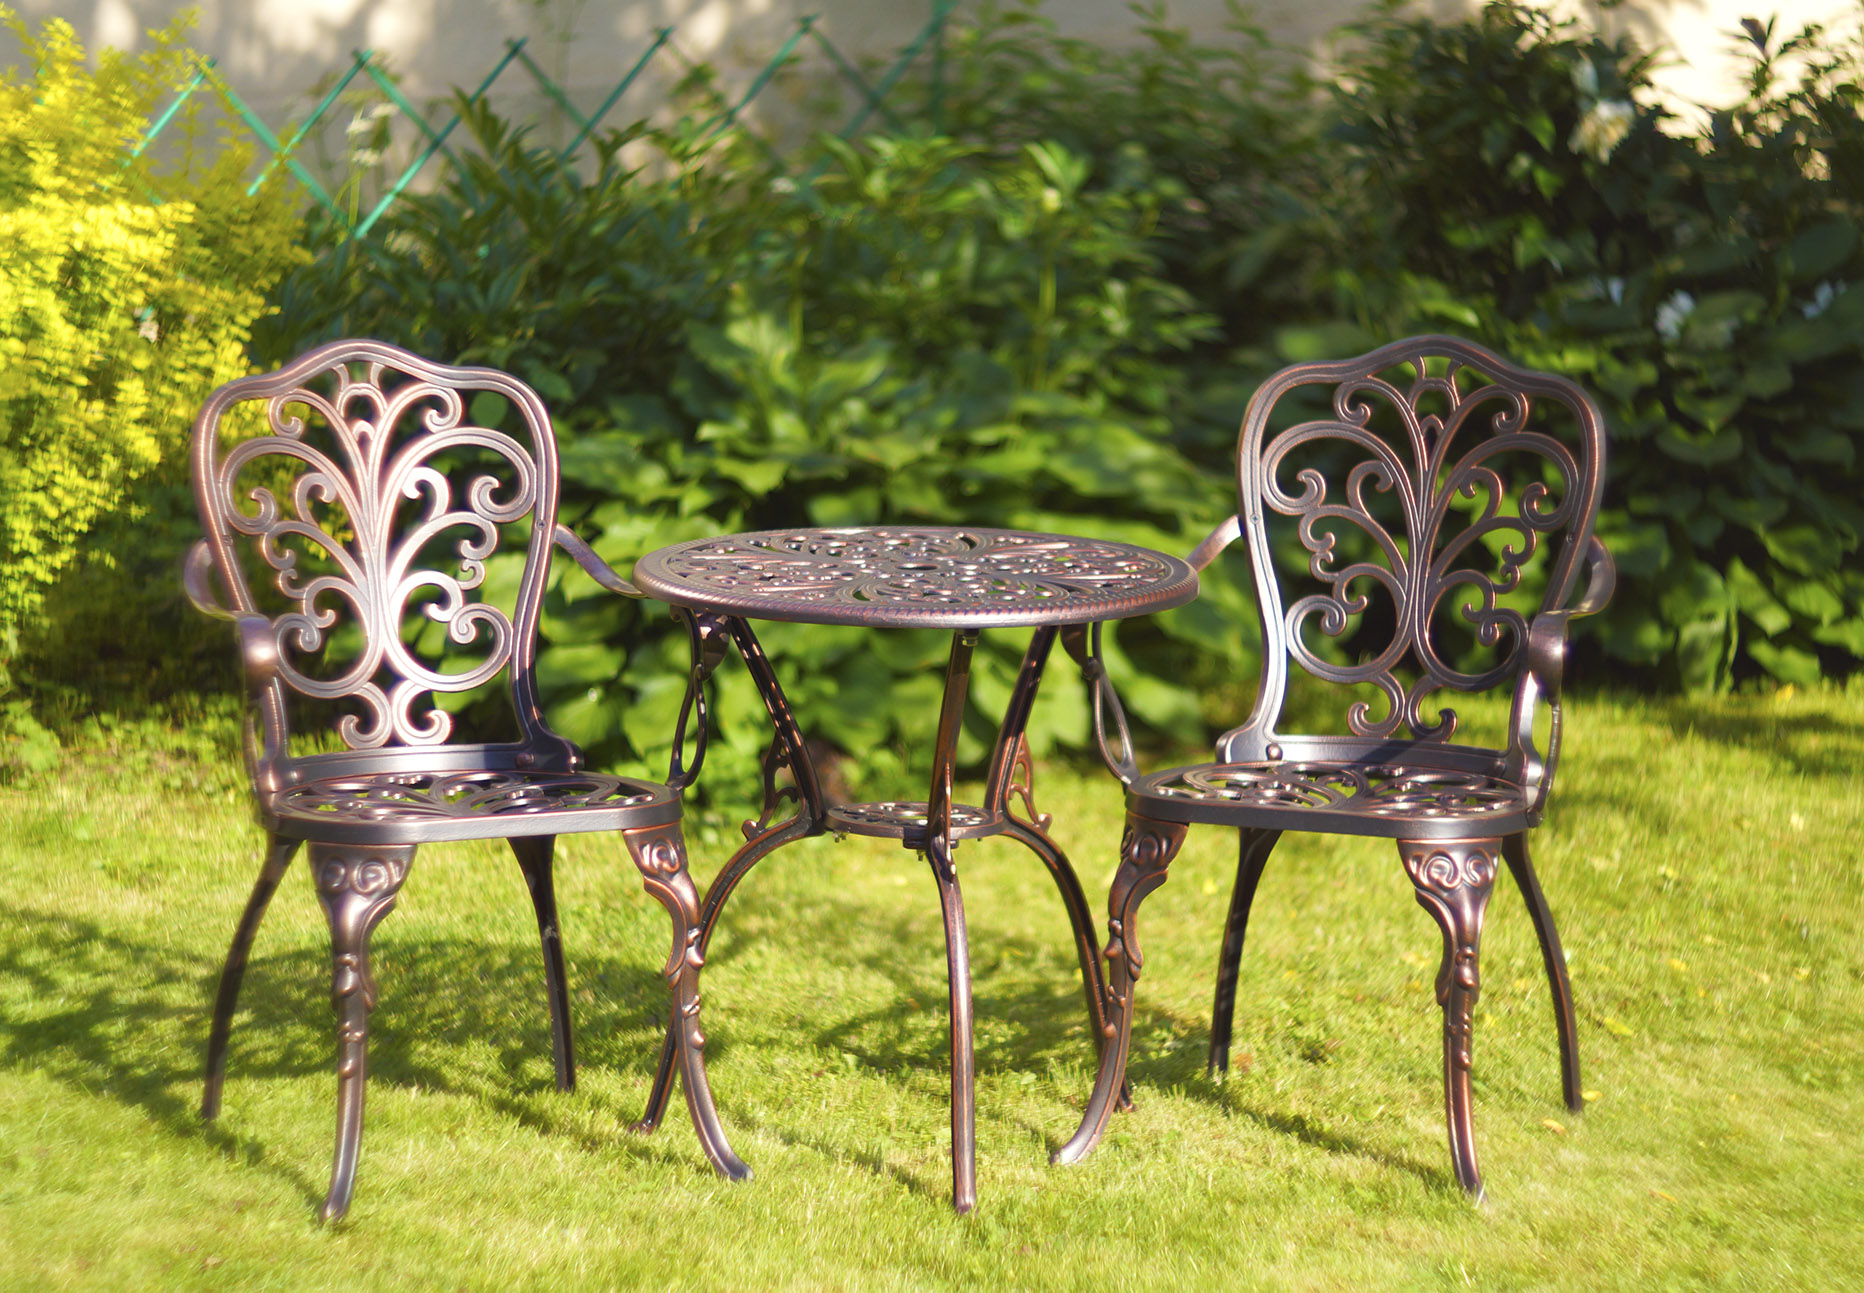 Ажурная садовая мебель из металла для дачи во двор, уличный стол и стулья в беседку, мебель патио, комплект садовой мебели Кружева, кованая мебель на веранду